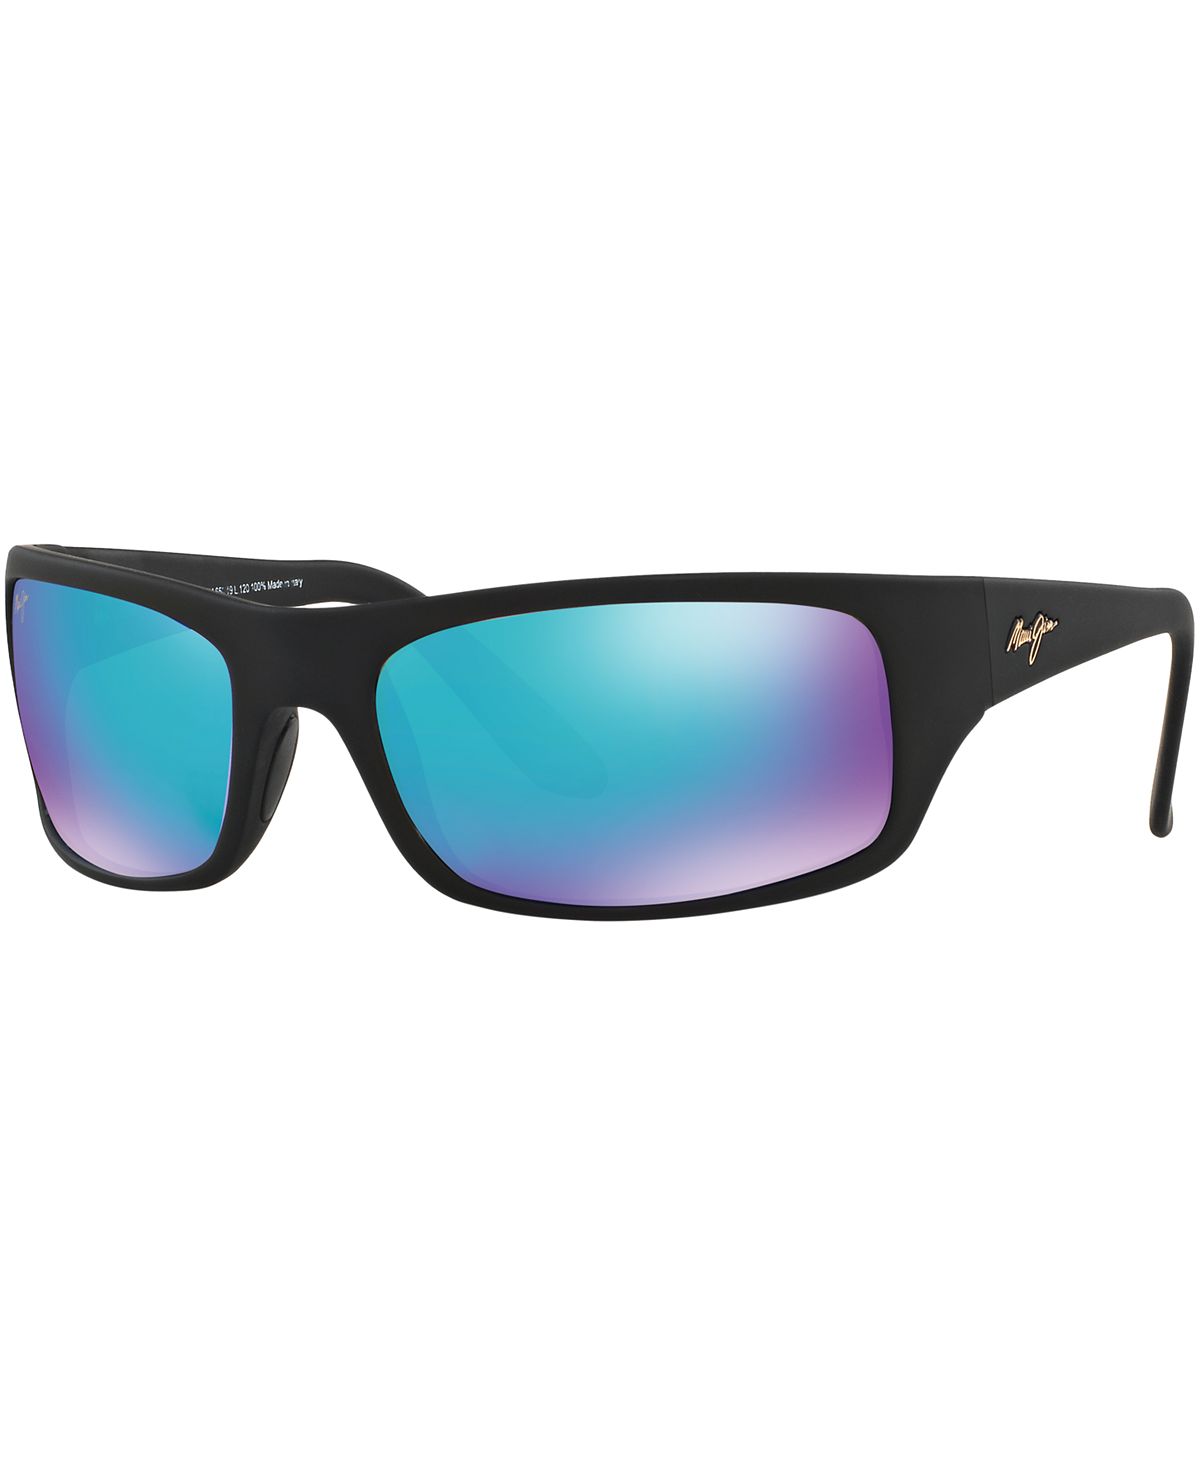 Поляризованные солнцезащитные очки Peahi, коллекция 202 Blue Hawaii Maui Jim солнцезащитные очки kou maui jim цвет navy blue blue hawaii